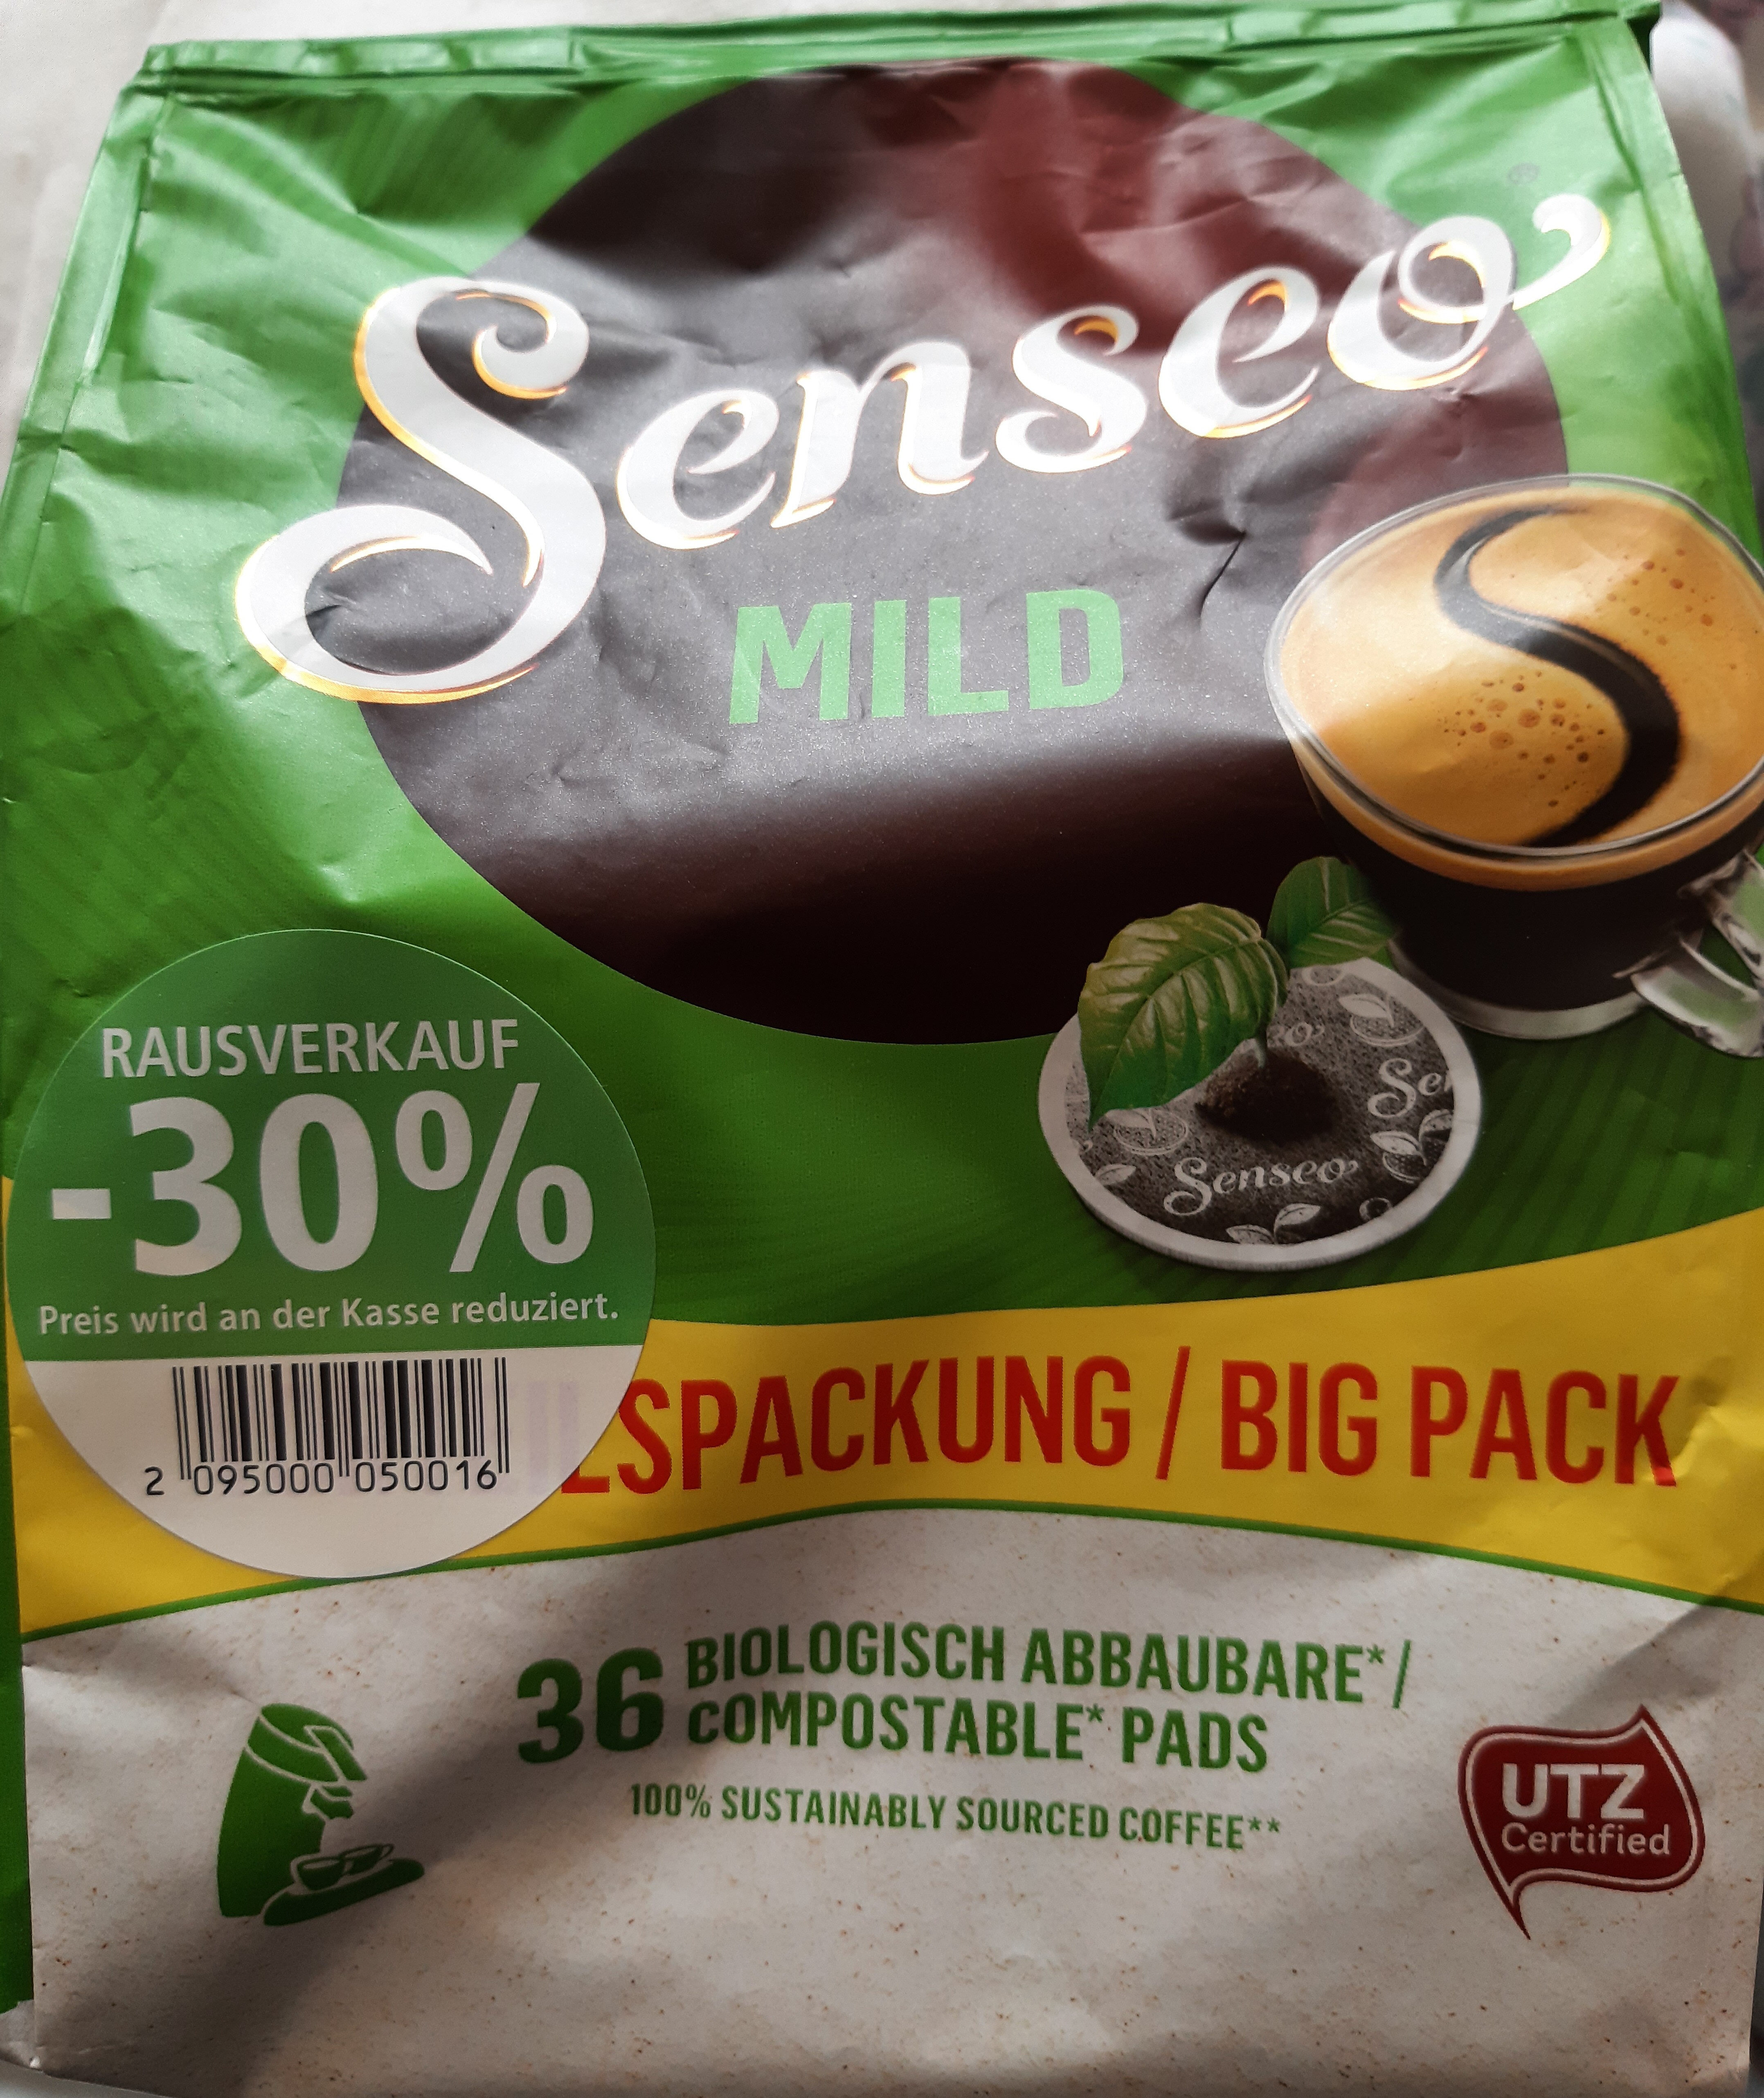 Senseo Mild Kaffeepads Vorteilspackung - Produkt